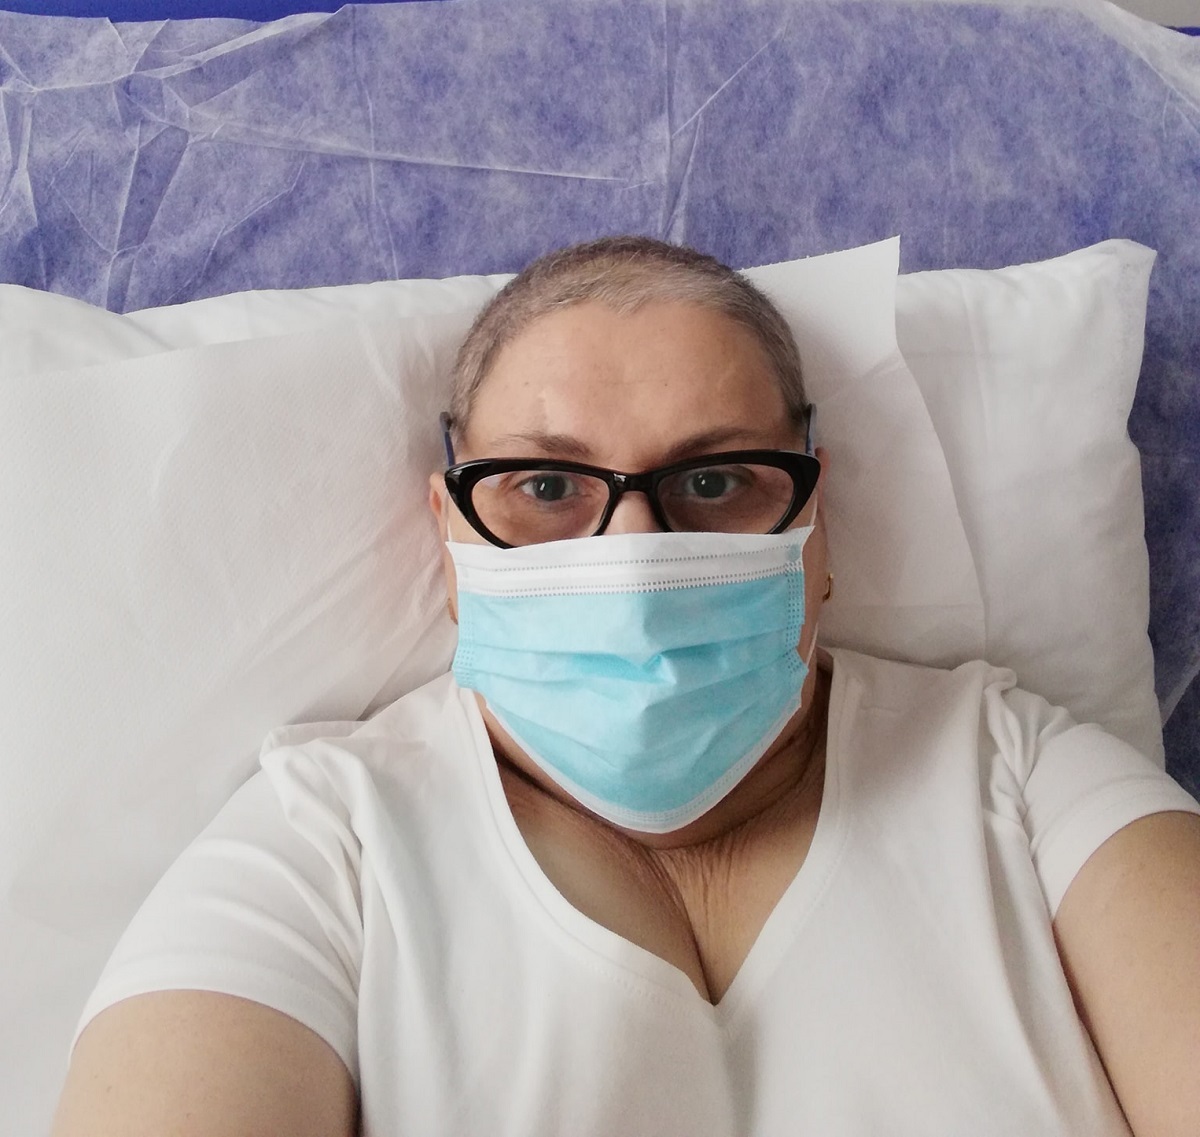 Cancerul în comunitatea mea: progresul îngrijirilor pentru cancer în România | kozossegikartya.ro